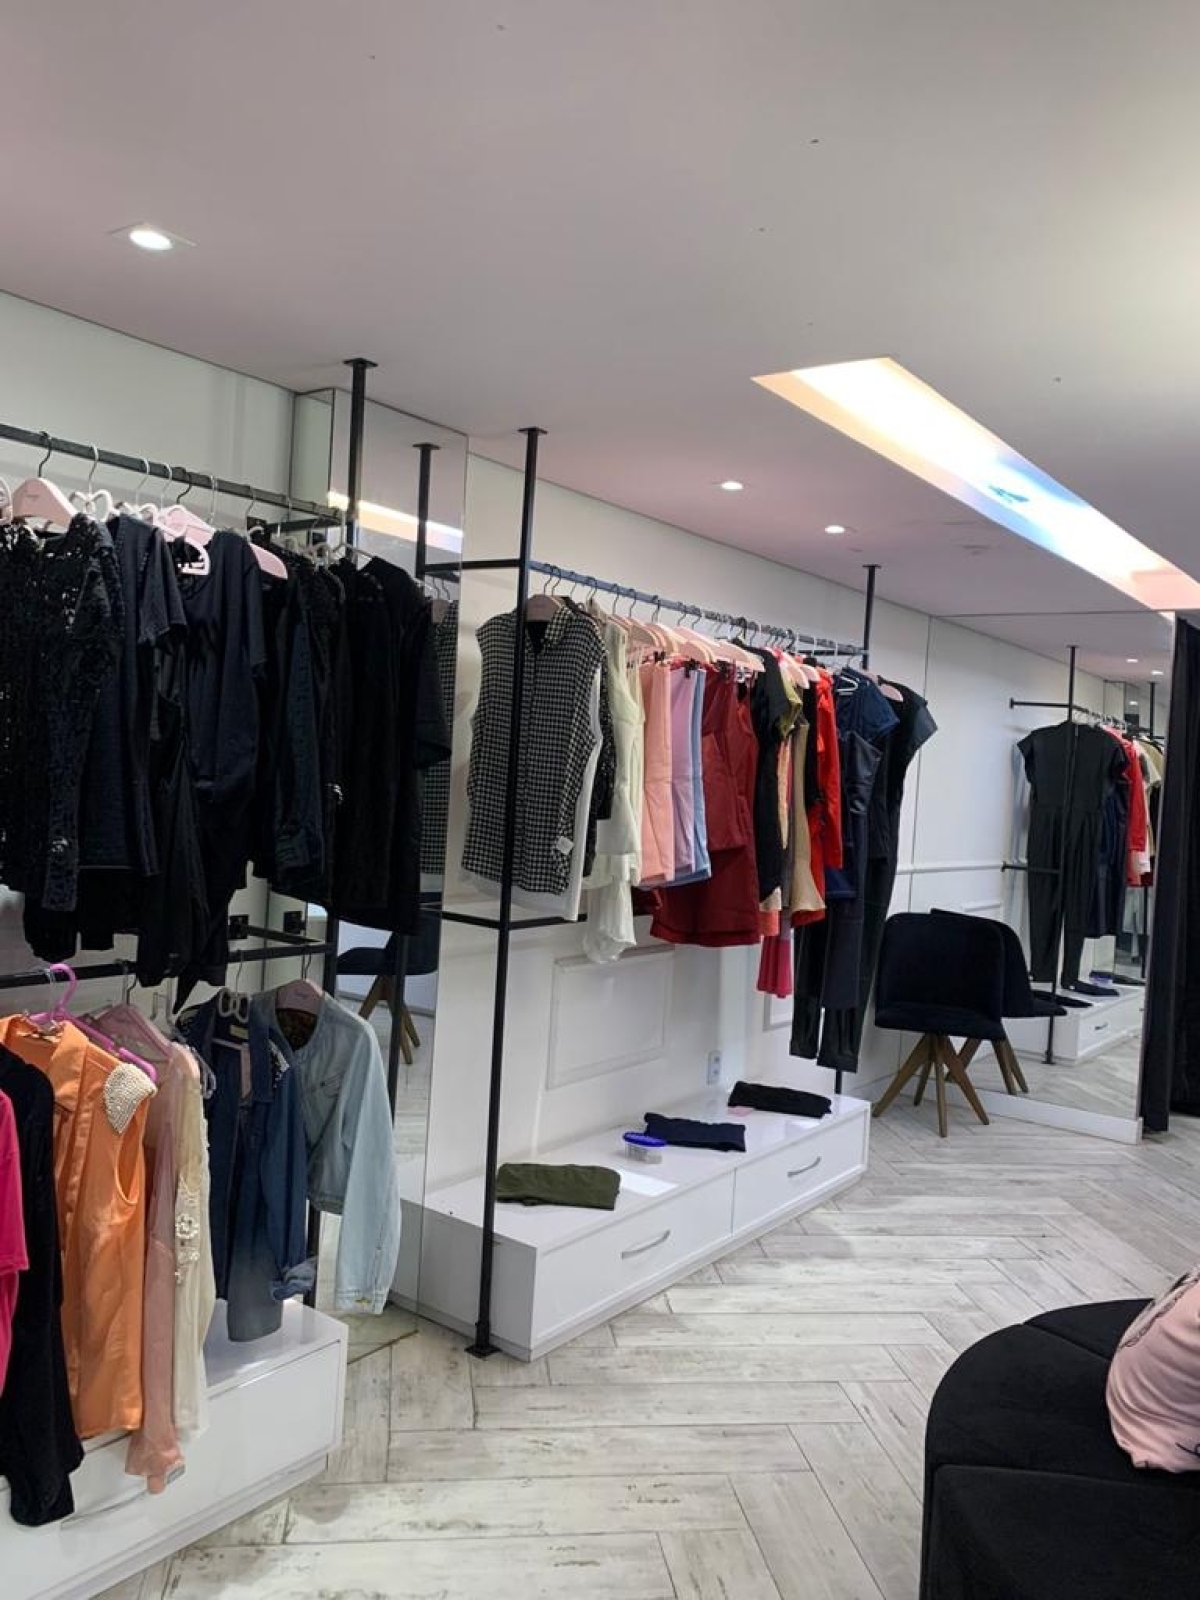 Espaço de Loja / Boutique de Moda Feminina Espaço Decorado